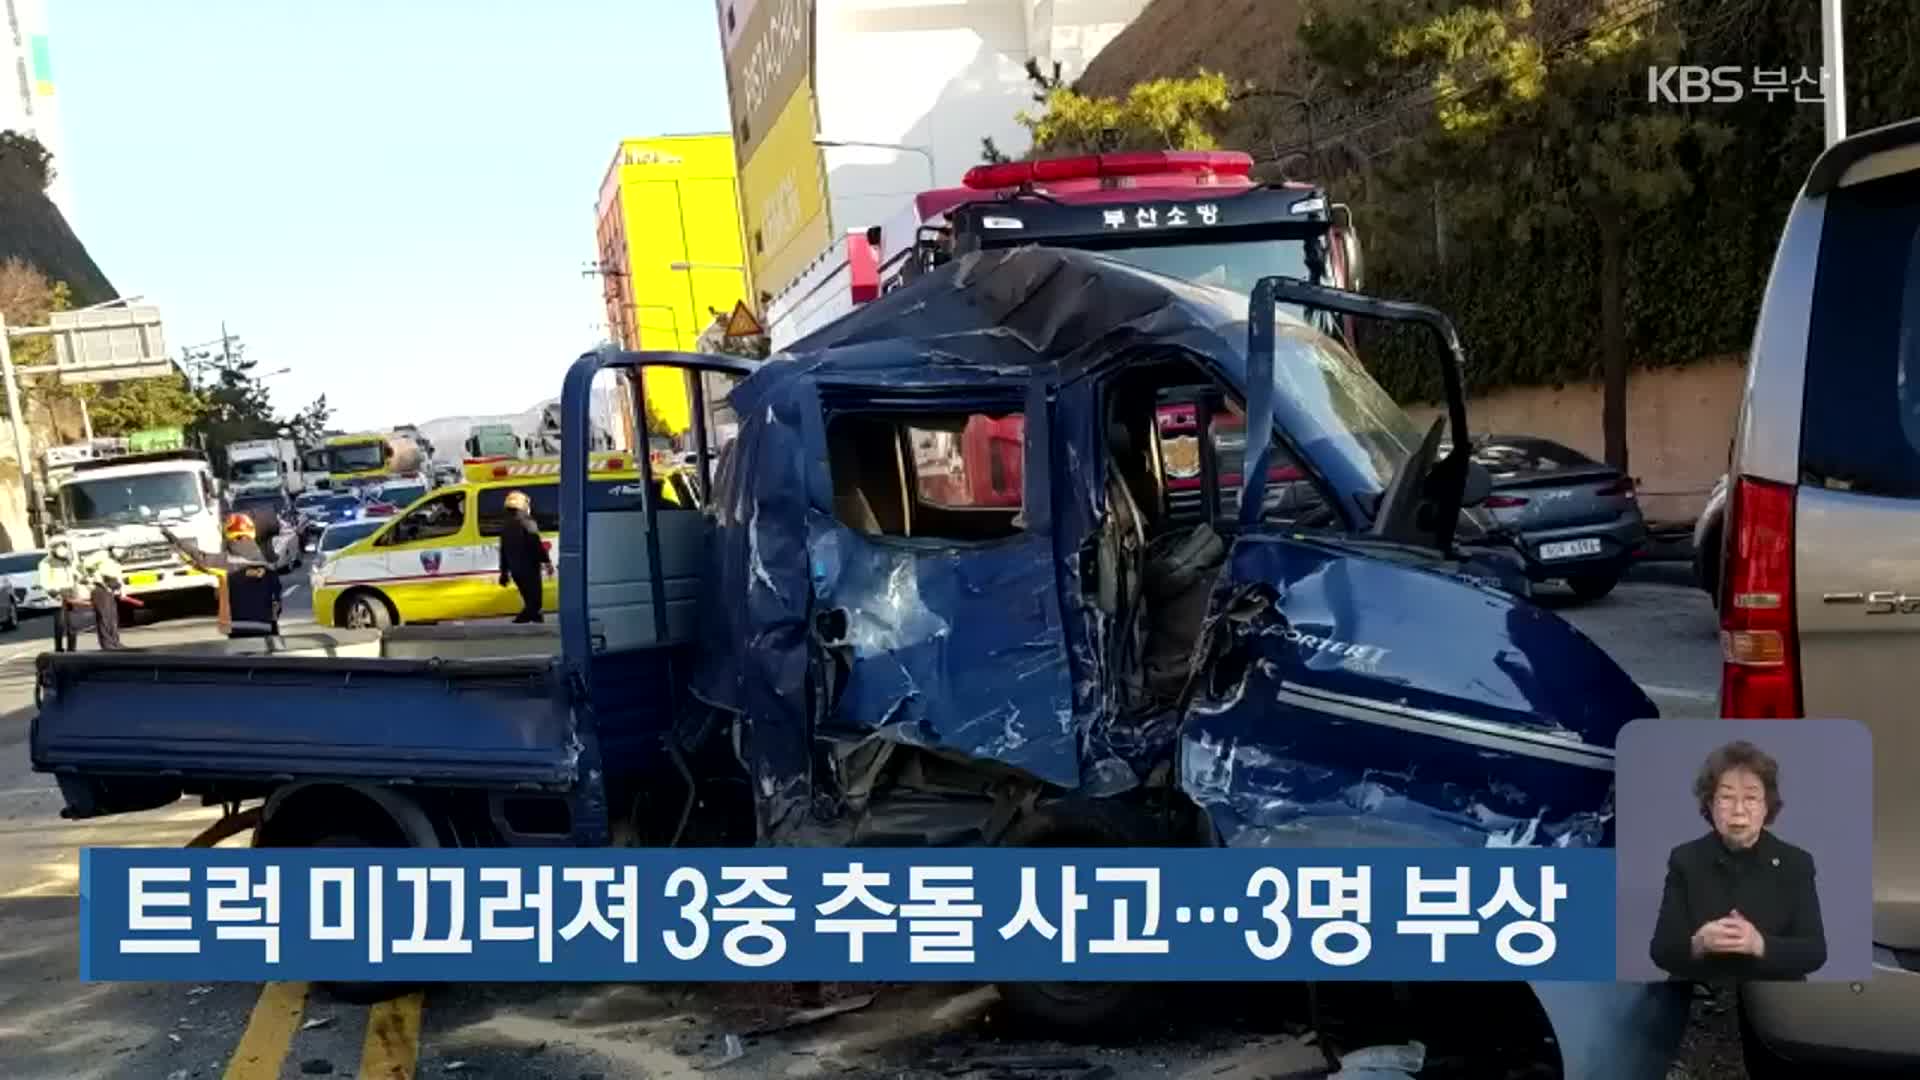 트럭 미끄러져 3중 추돌 사고…3명 부상